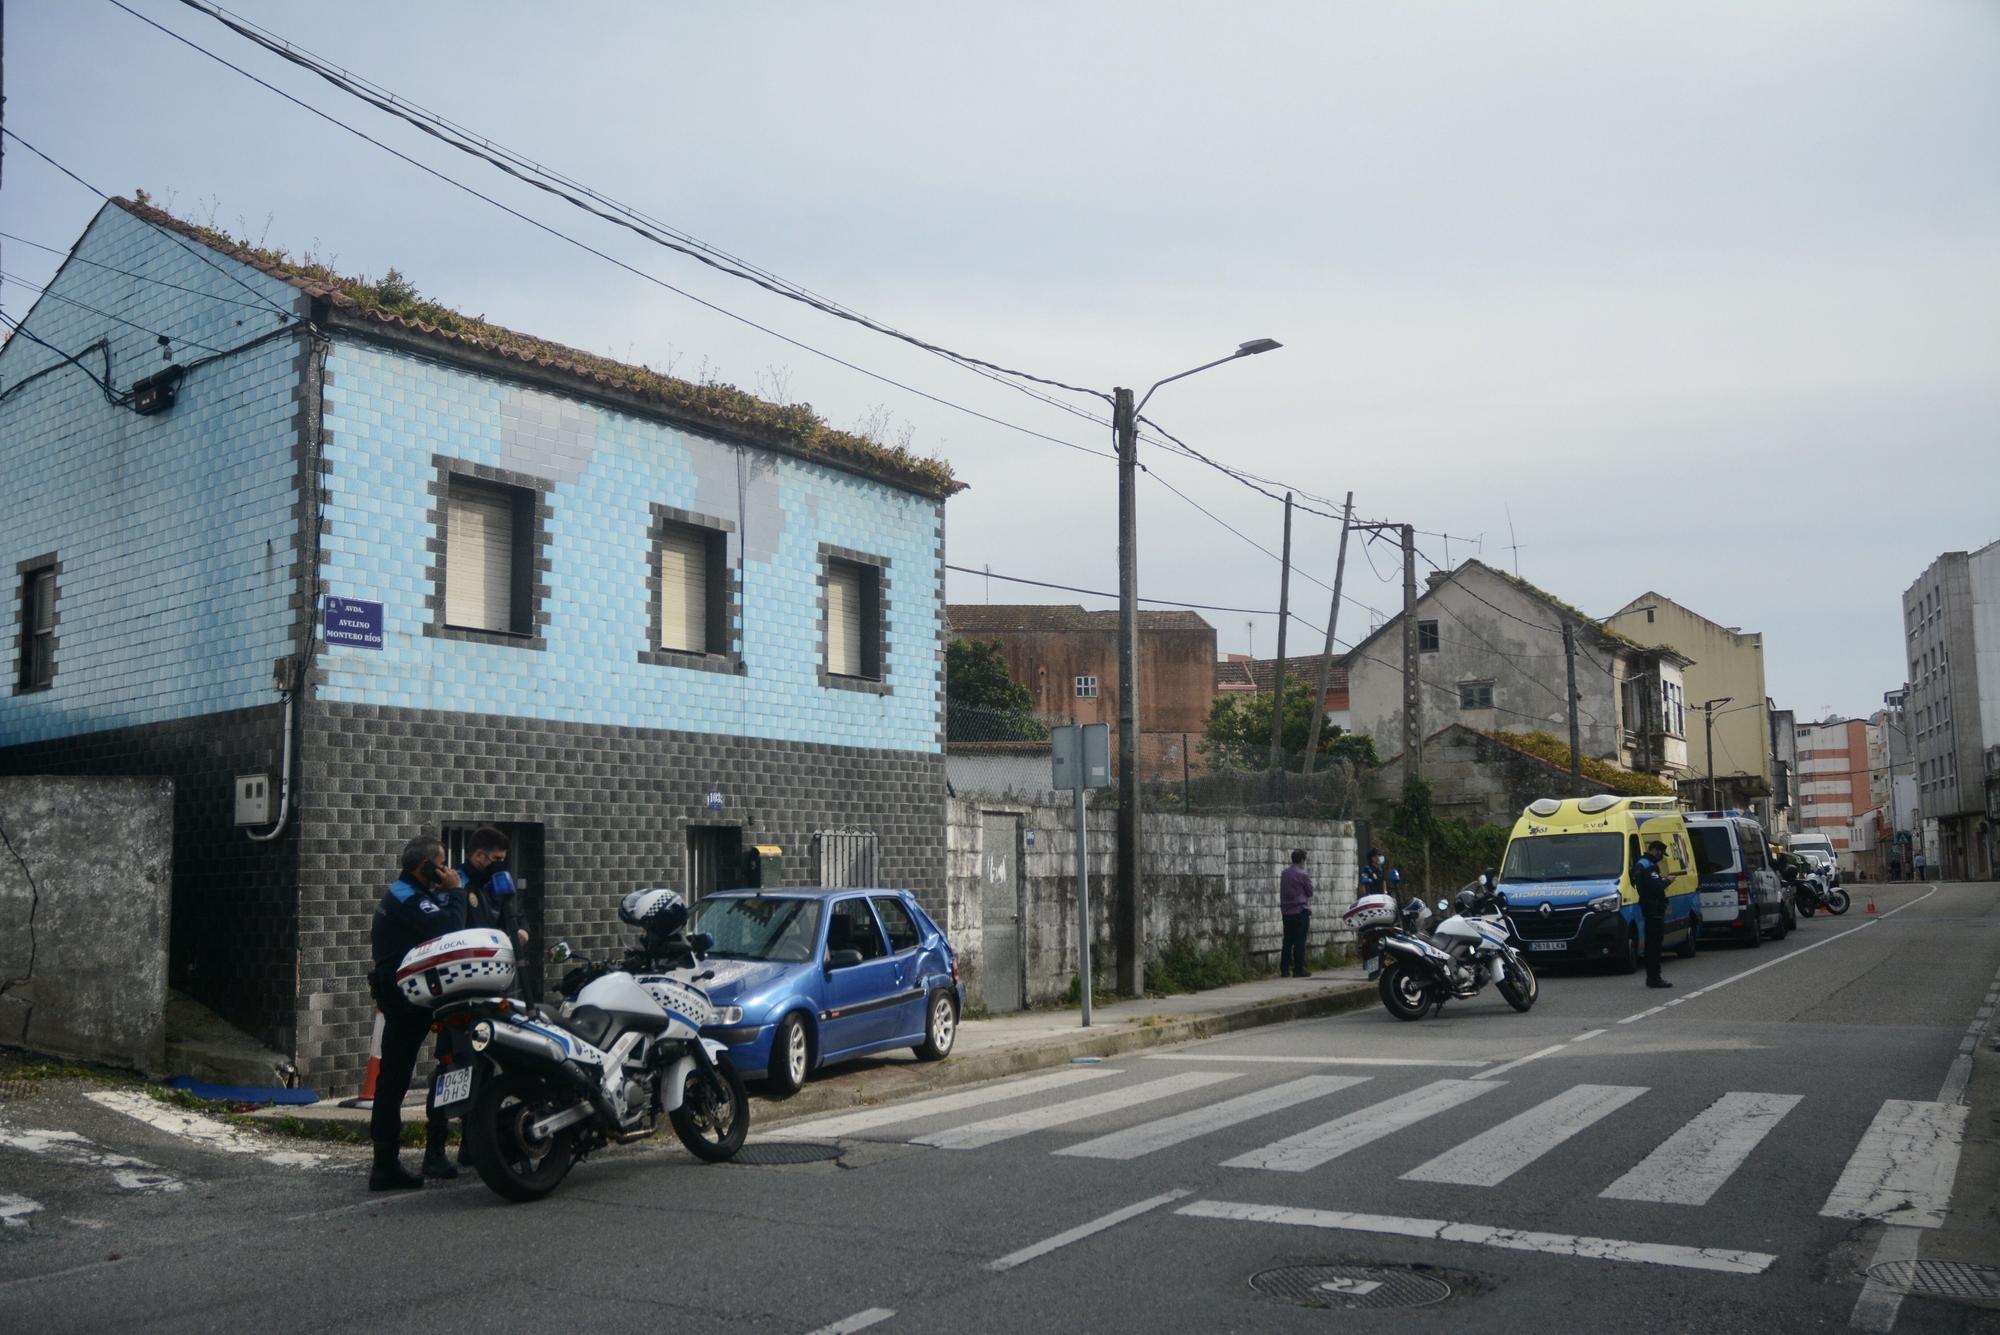 Atropello mortal en Pontevedra: en libertad el acusado de arrollar a una mujer y herir de gravedad a una niña